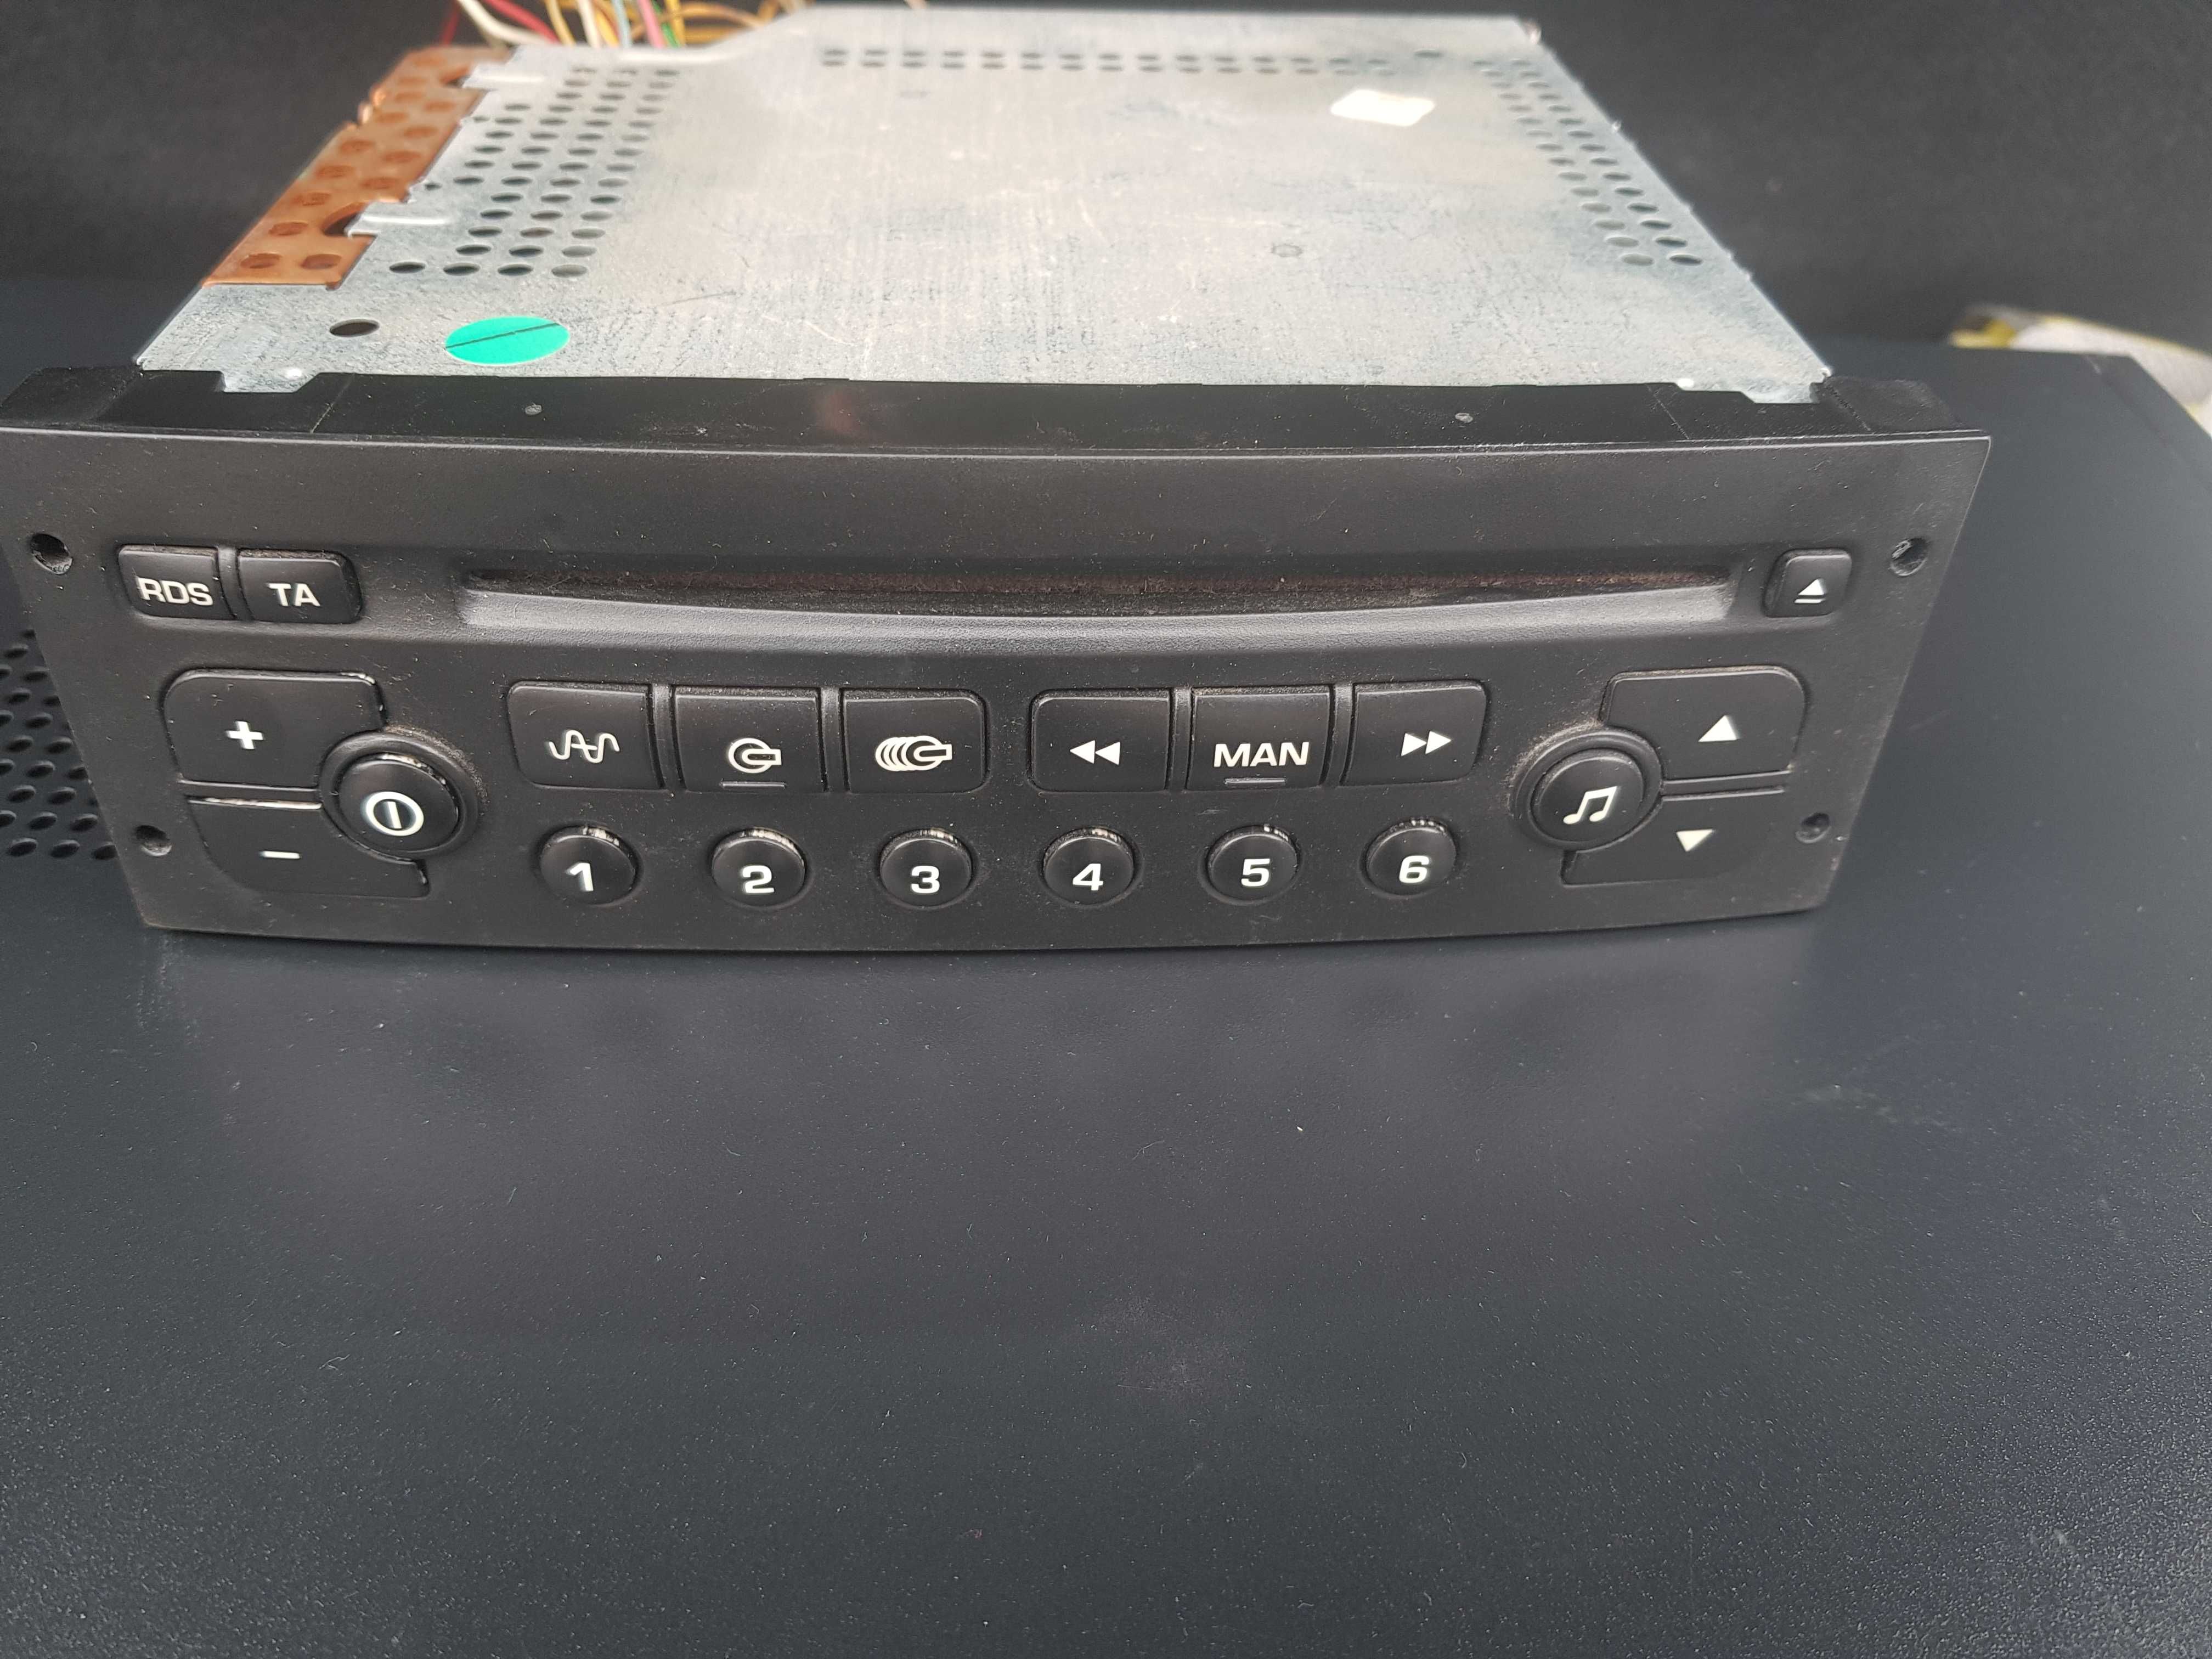 Radio CD Peugeot 206